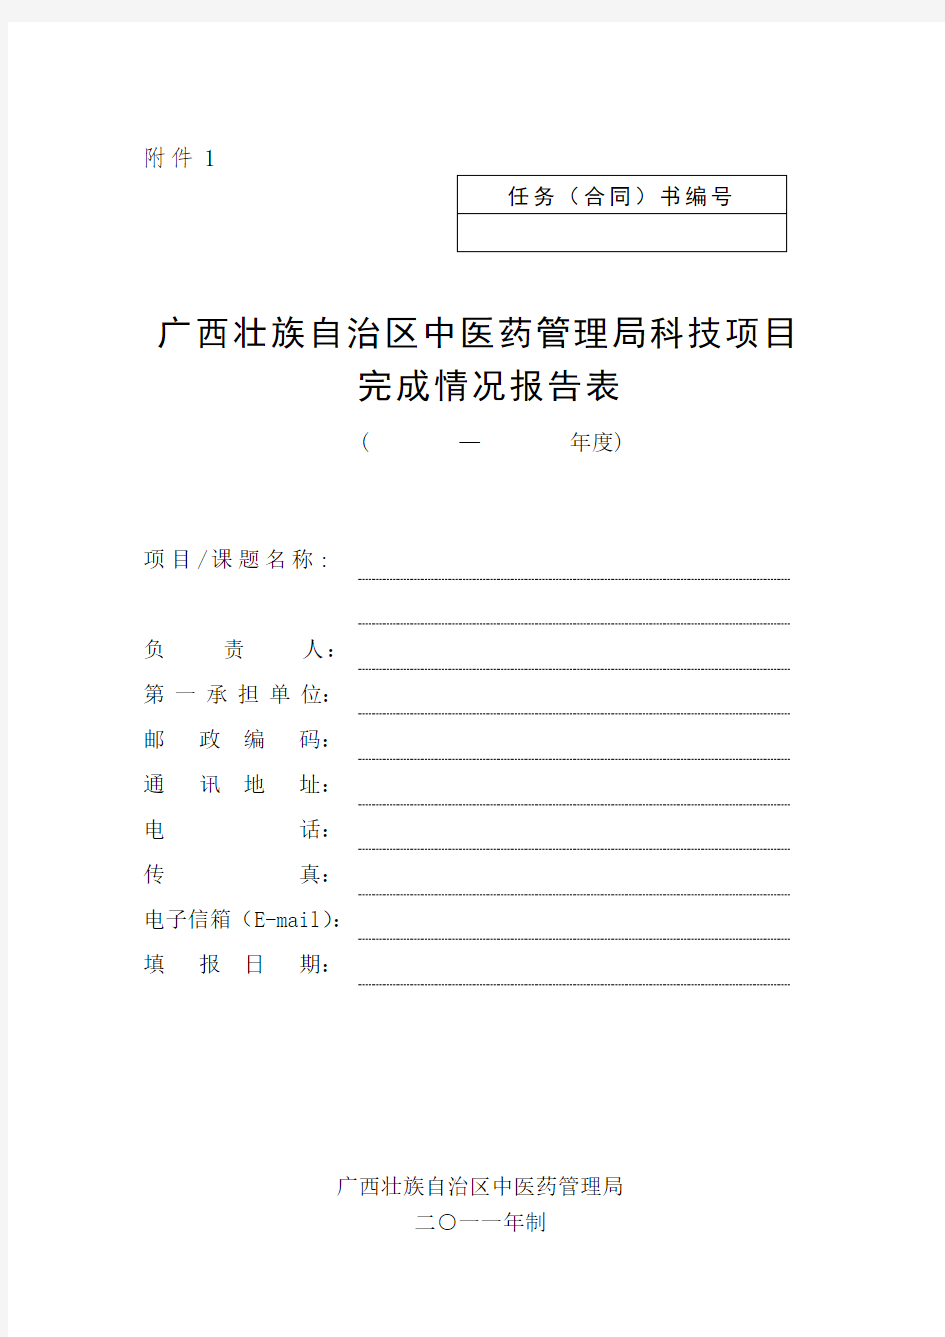 广西中医药管理科技项目完成情况报告表